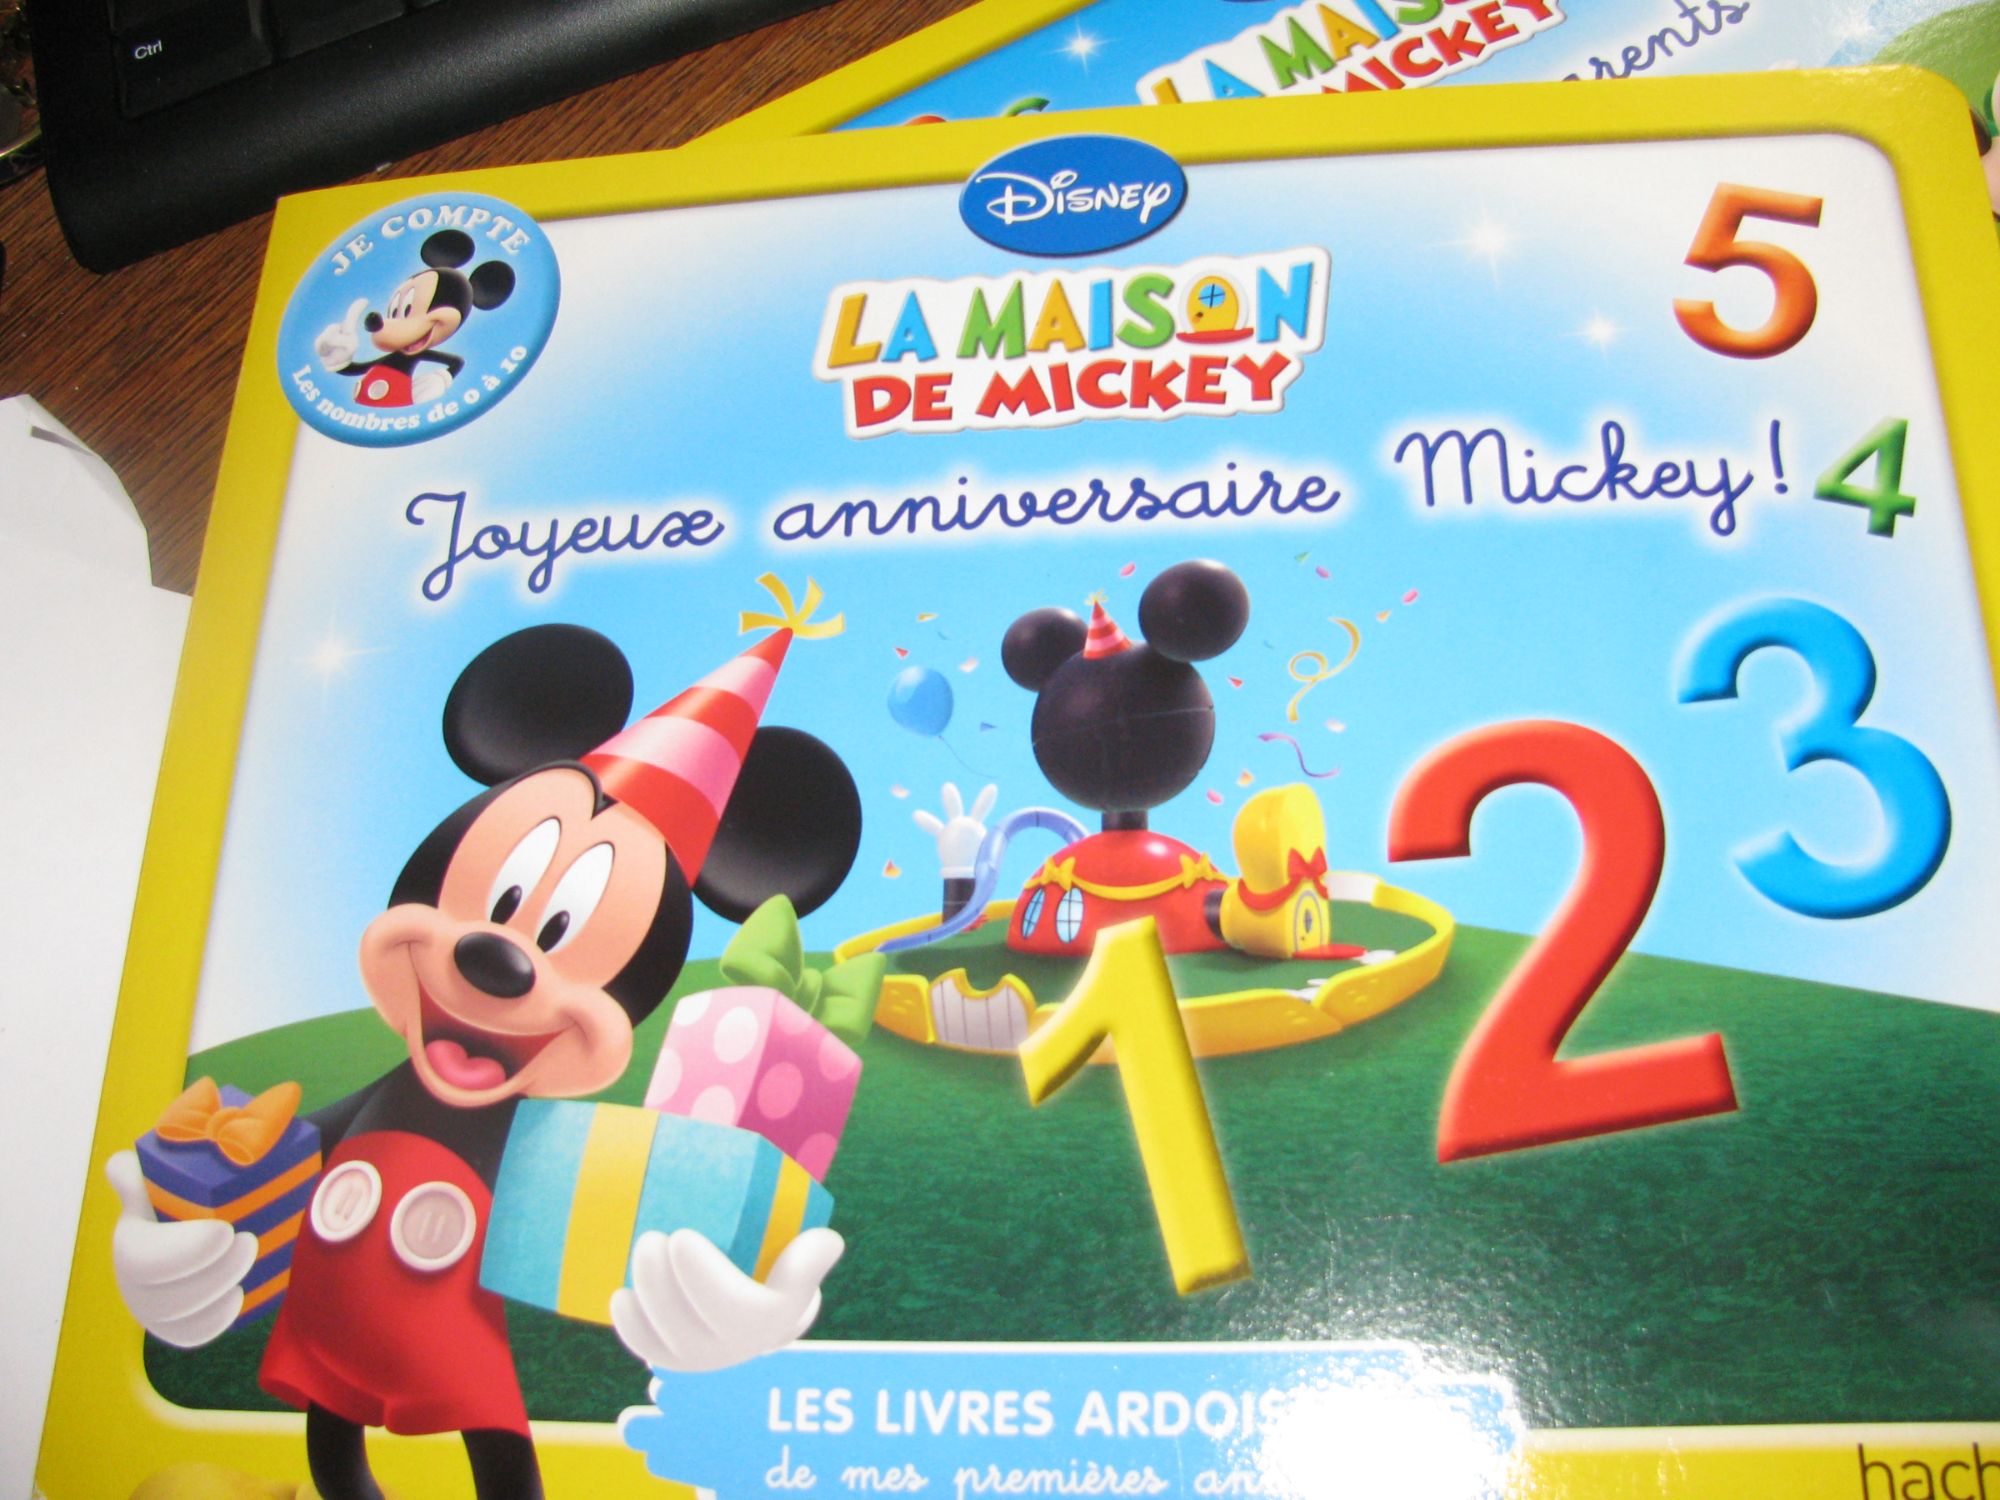 2 Livres Ardoises - La Maison de Mickey